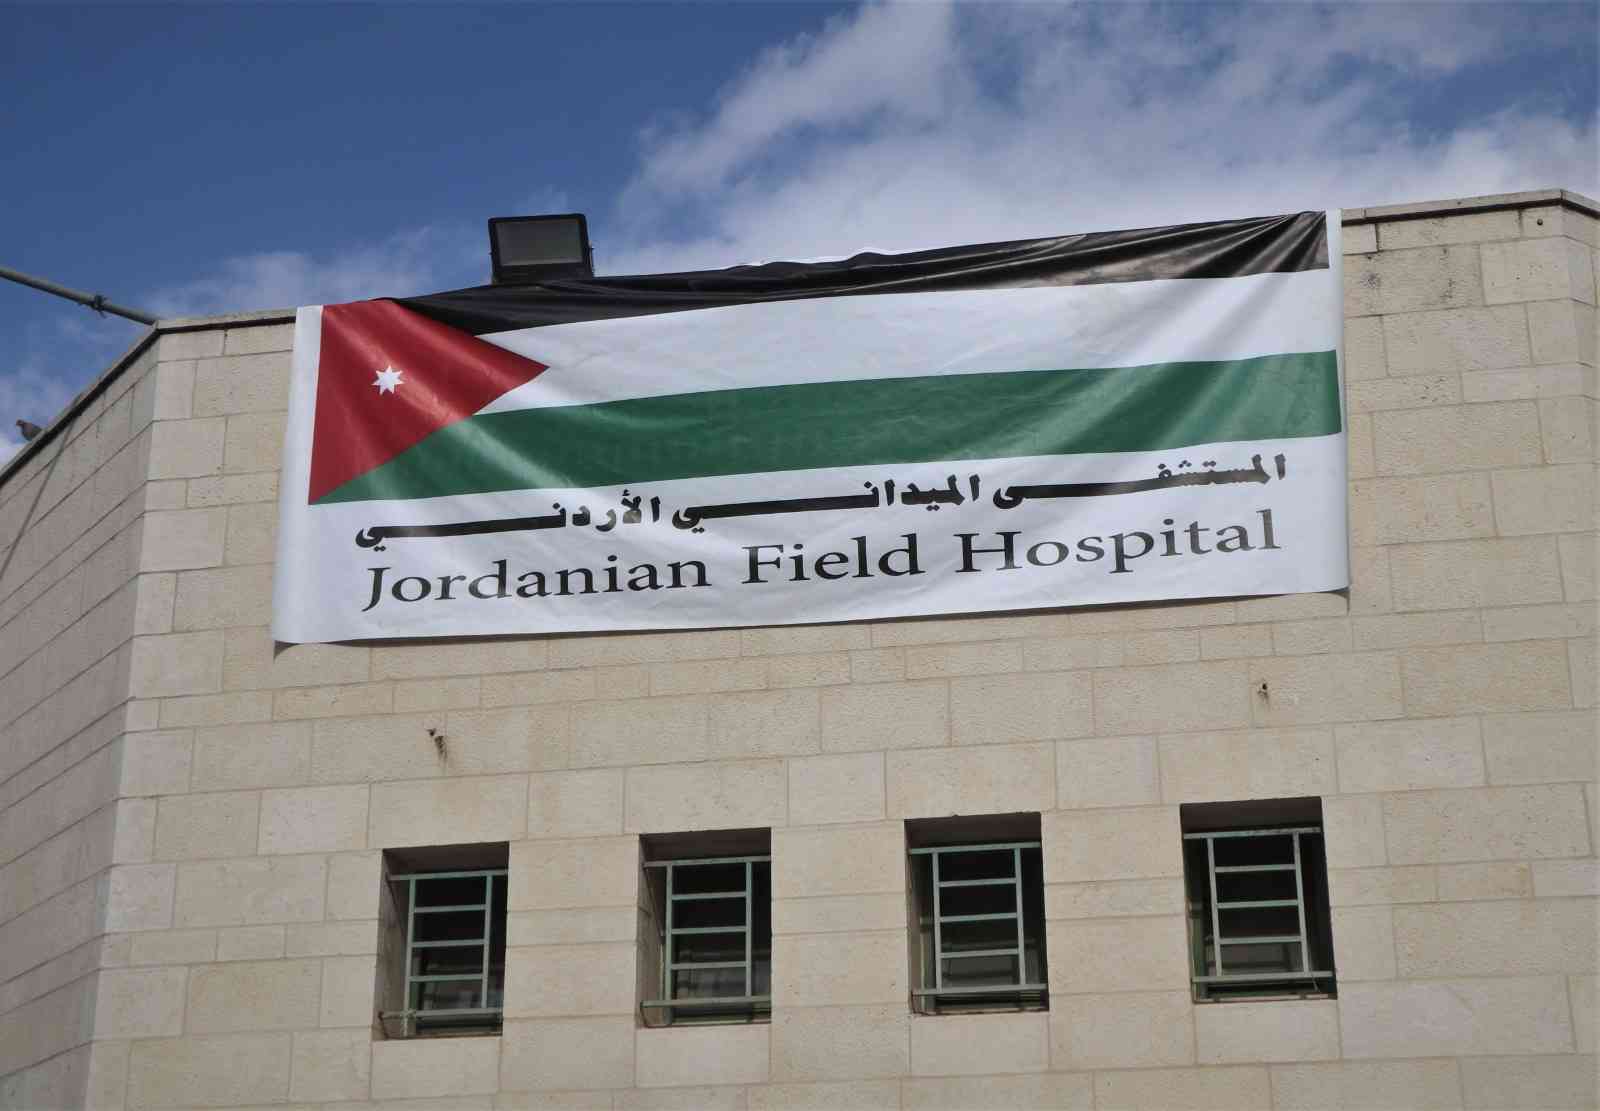 مئات العمليات يوميا في المستشفى الميداني بخانيونس